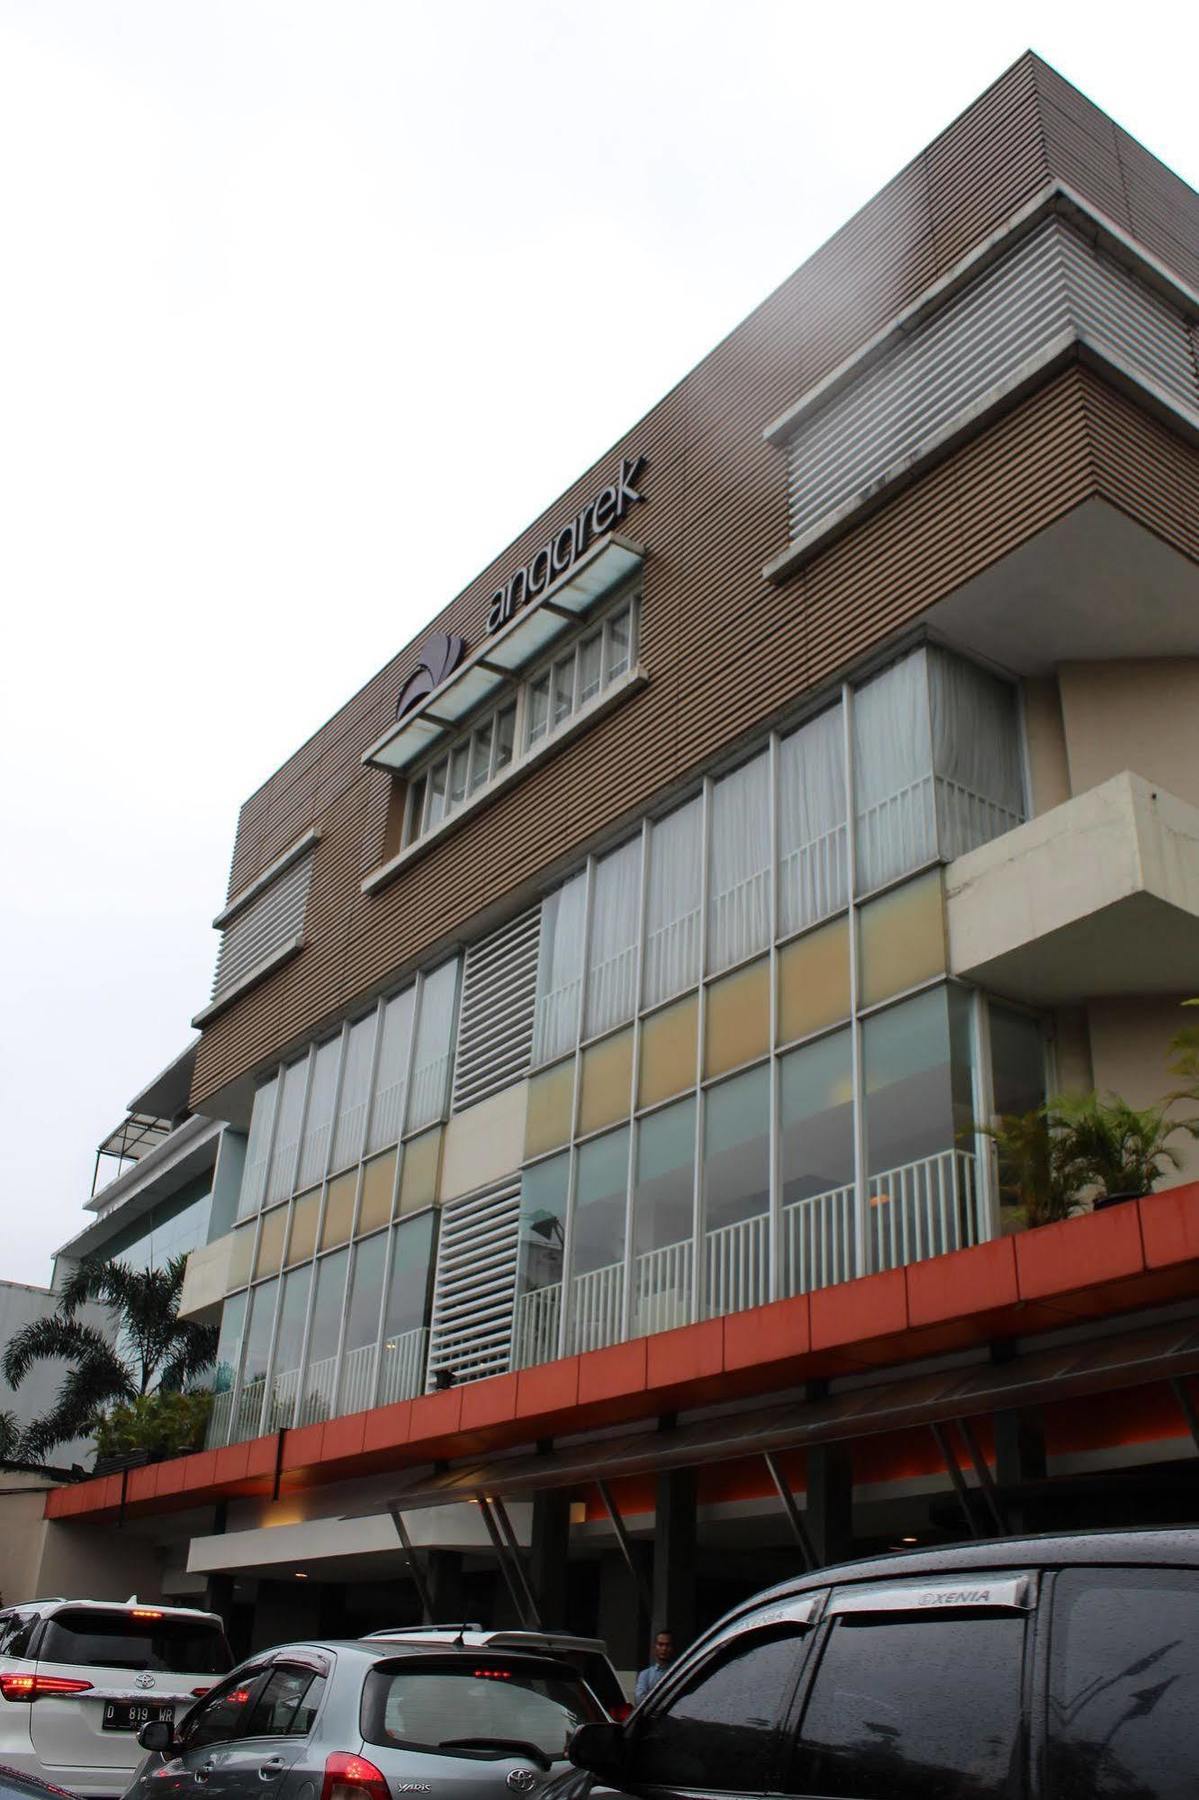 Anggrek Shopping Hotel Bandung Bagian luar foto